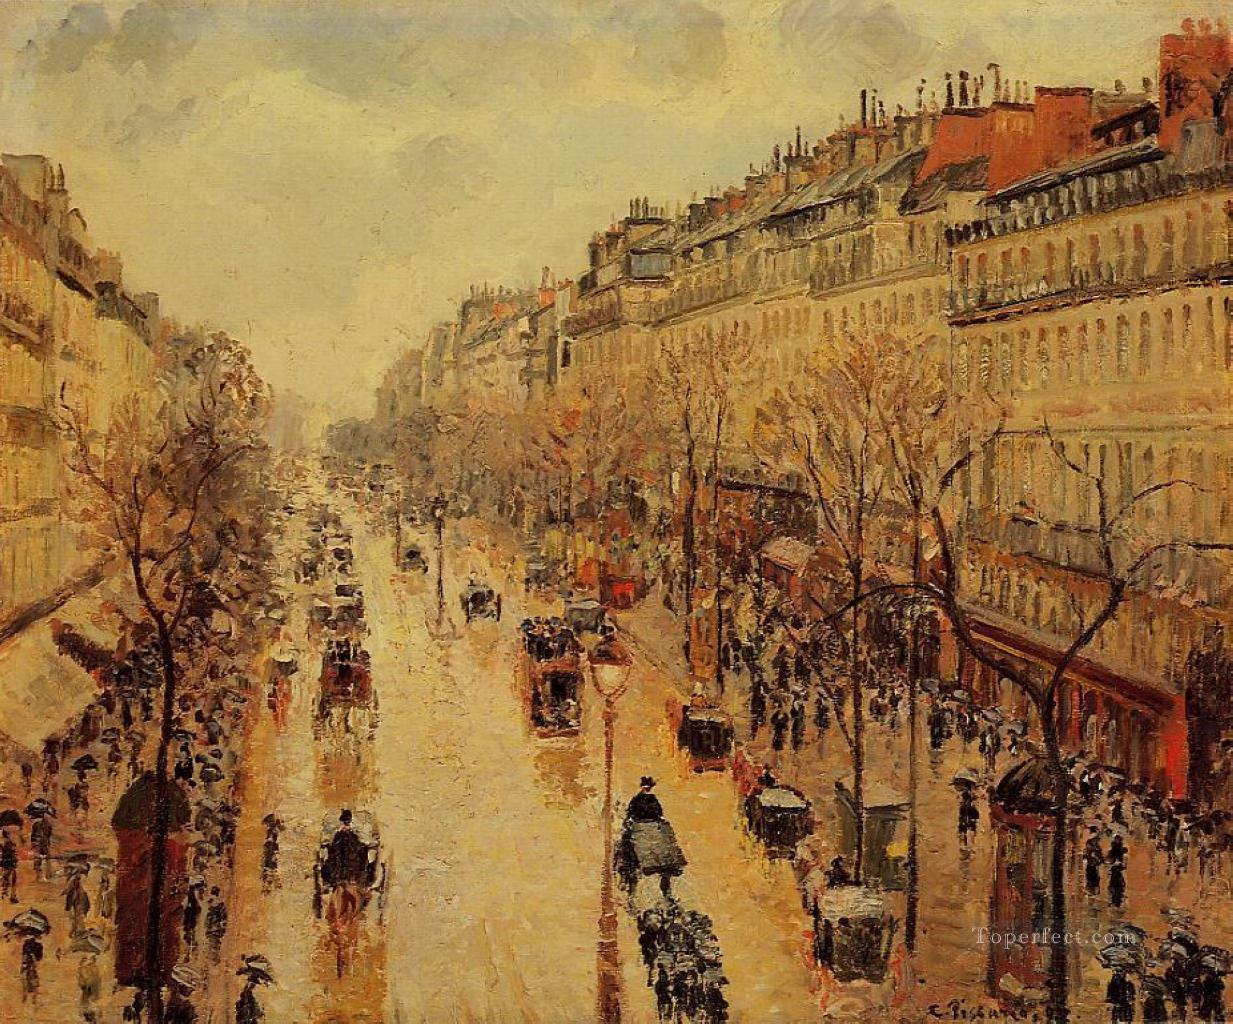 カミーユ・ピサロ 大通り モンマルトル 雨の午後 1897年 パリジャン油絵